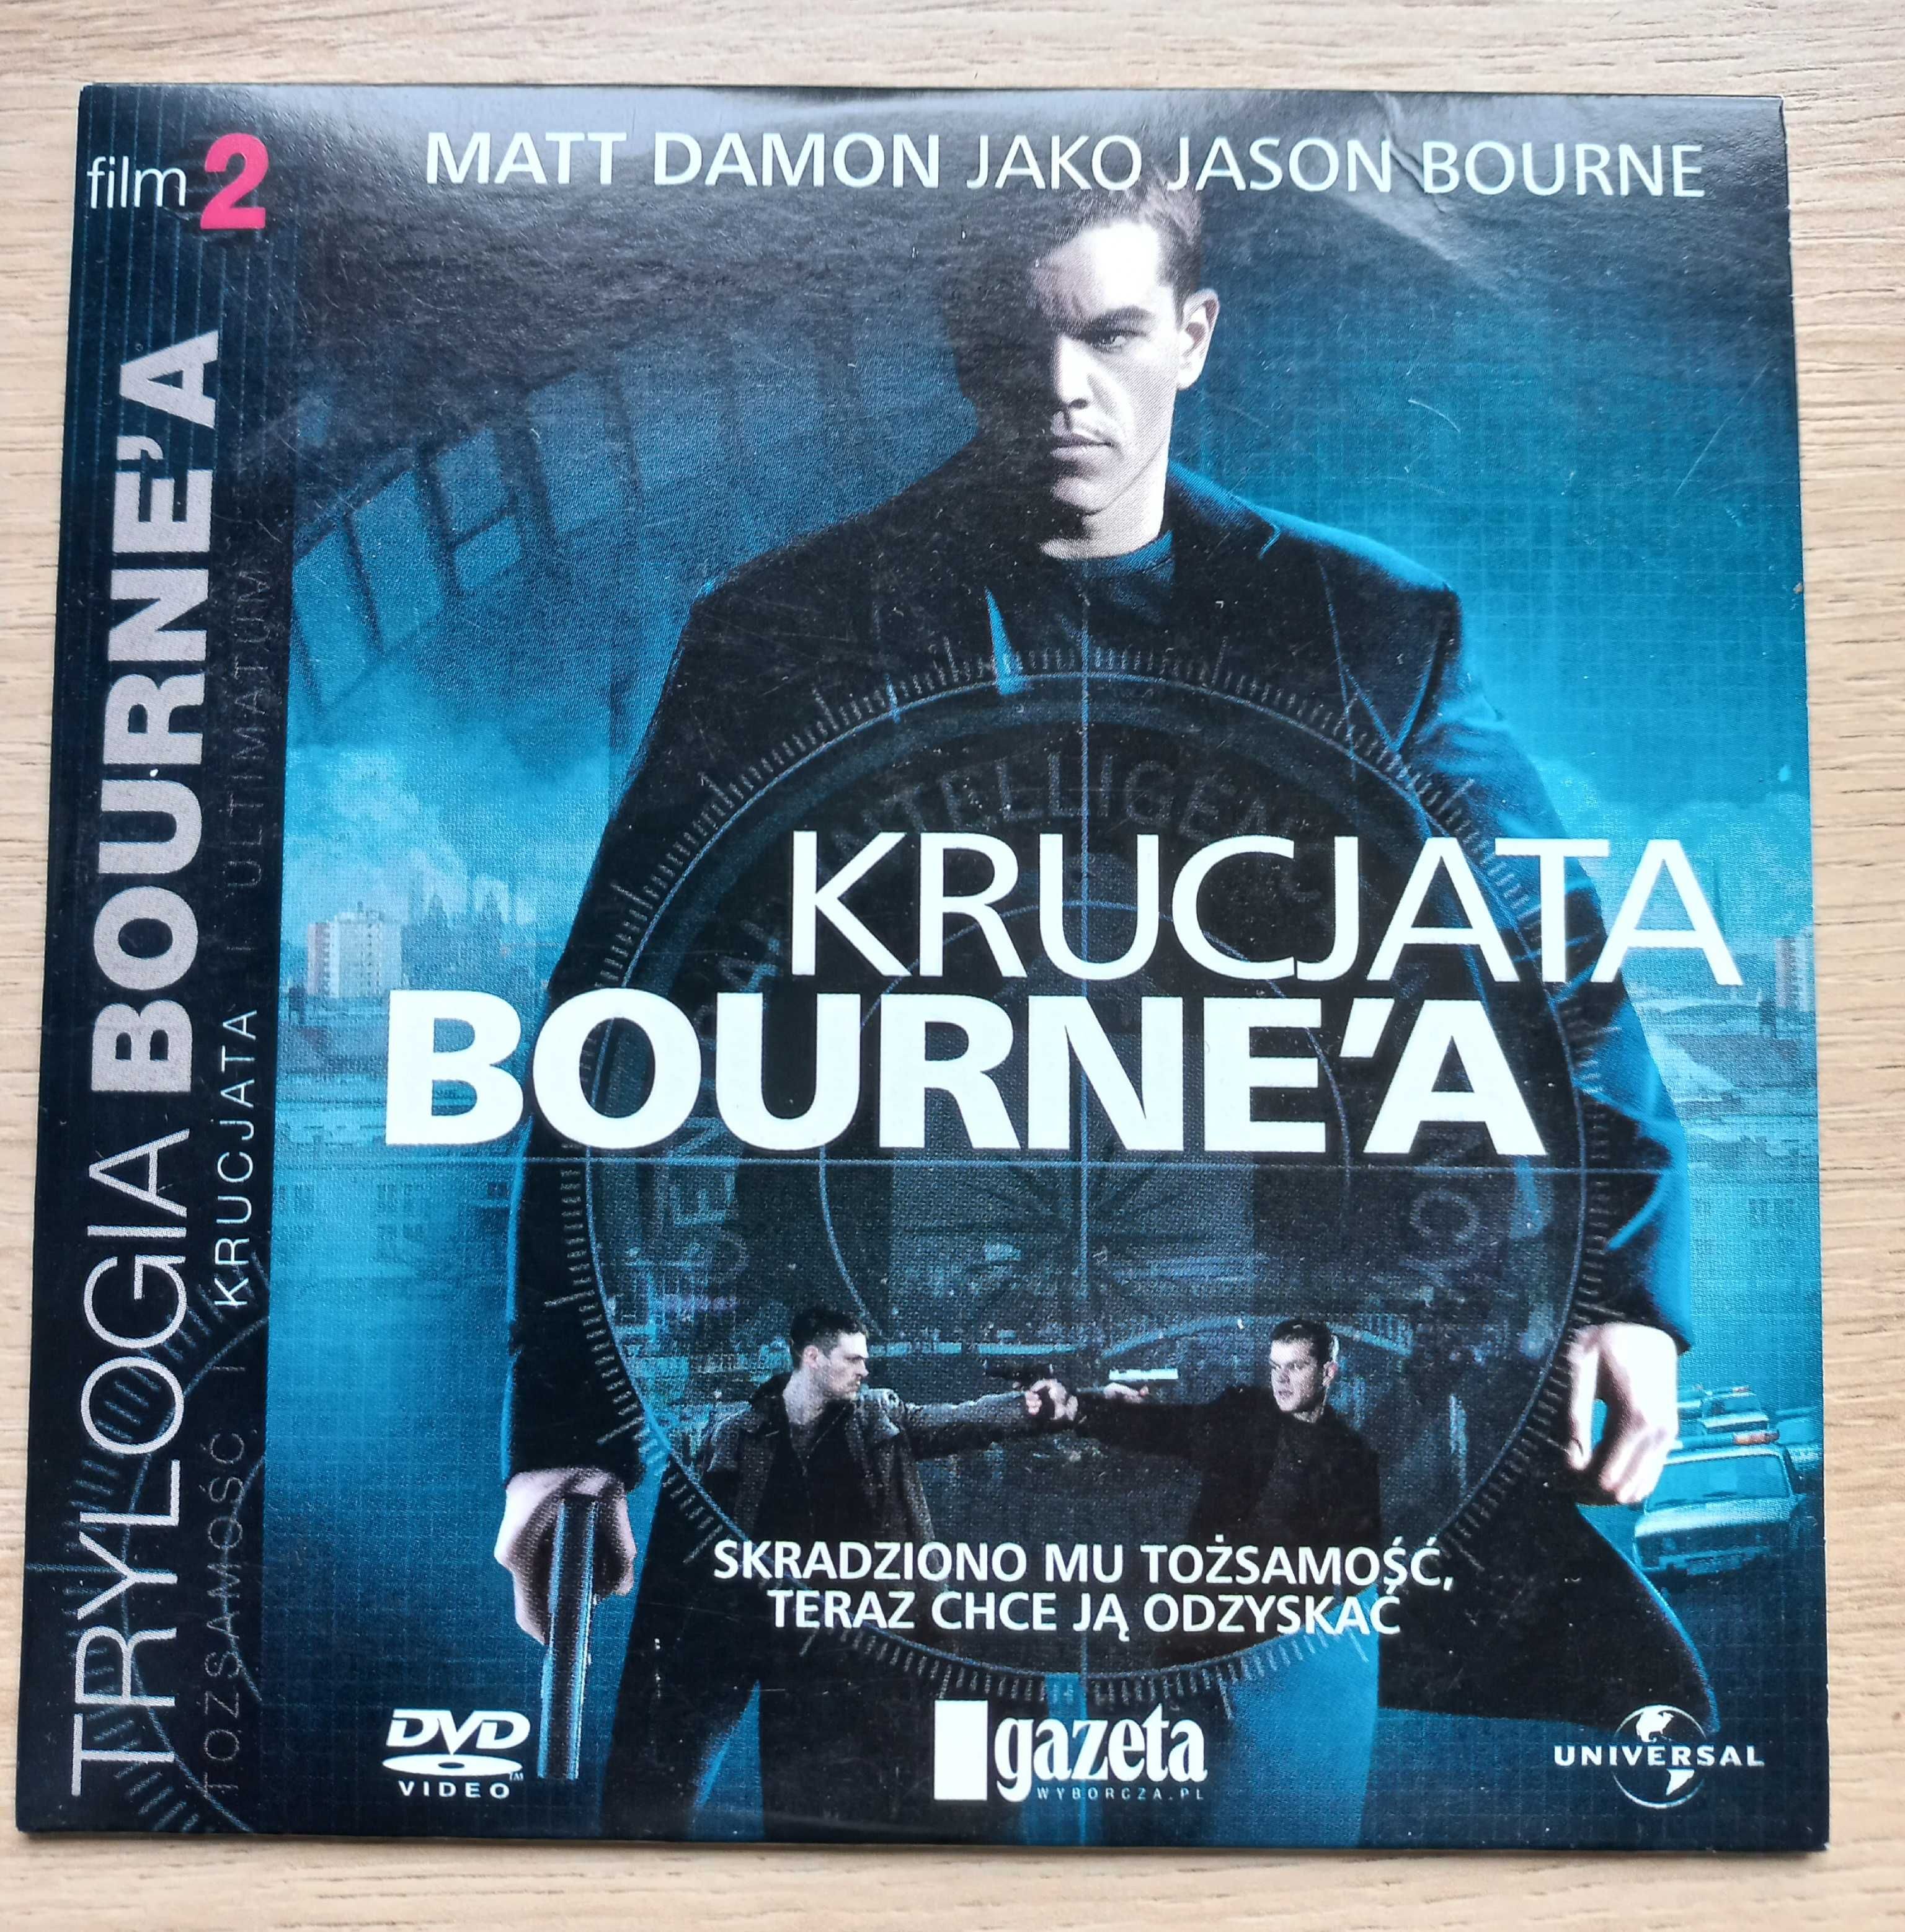 DVD " Krucjata Bourne'a"